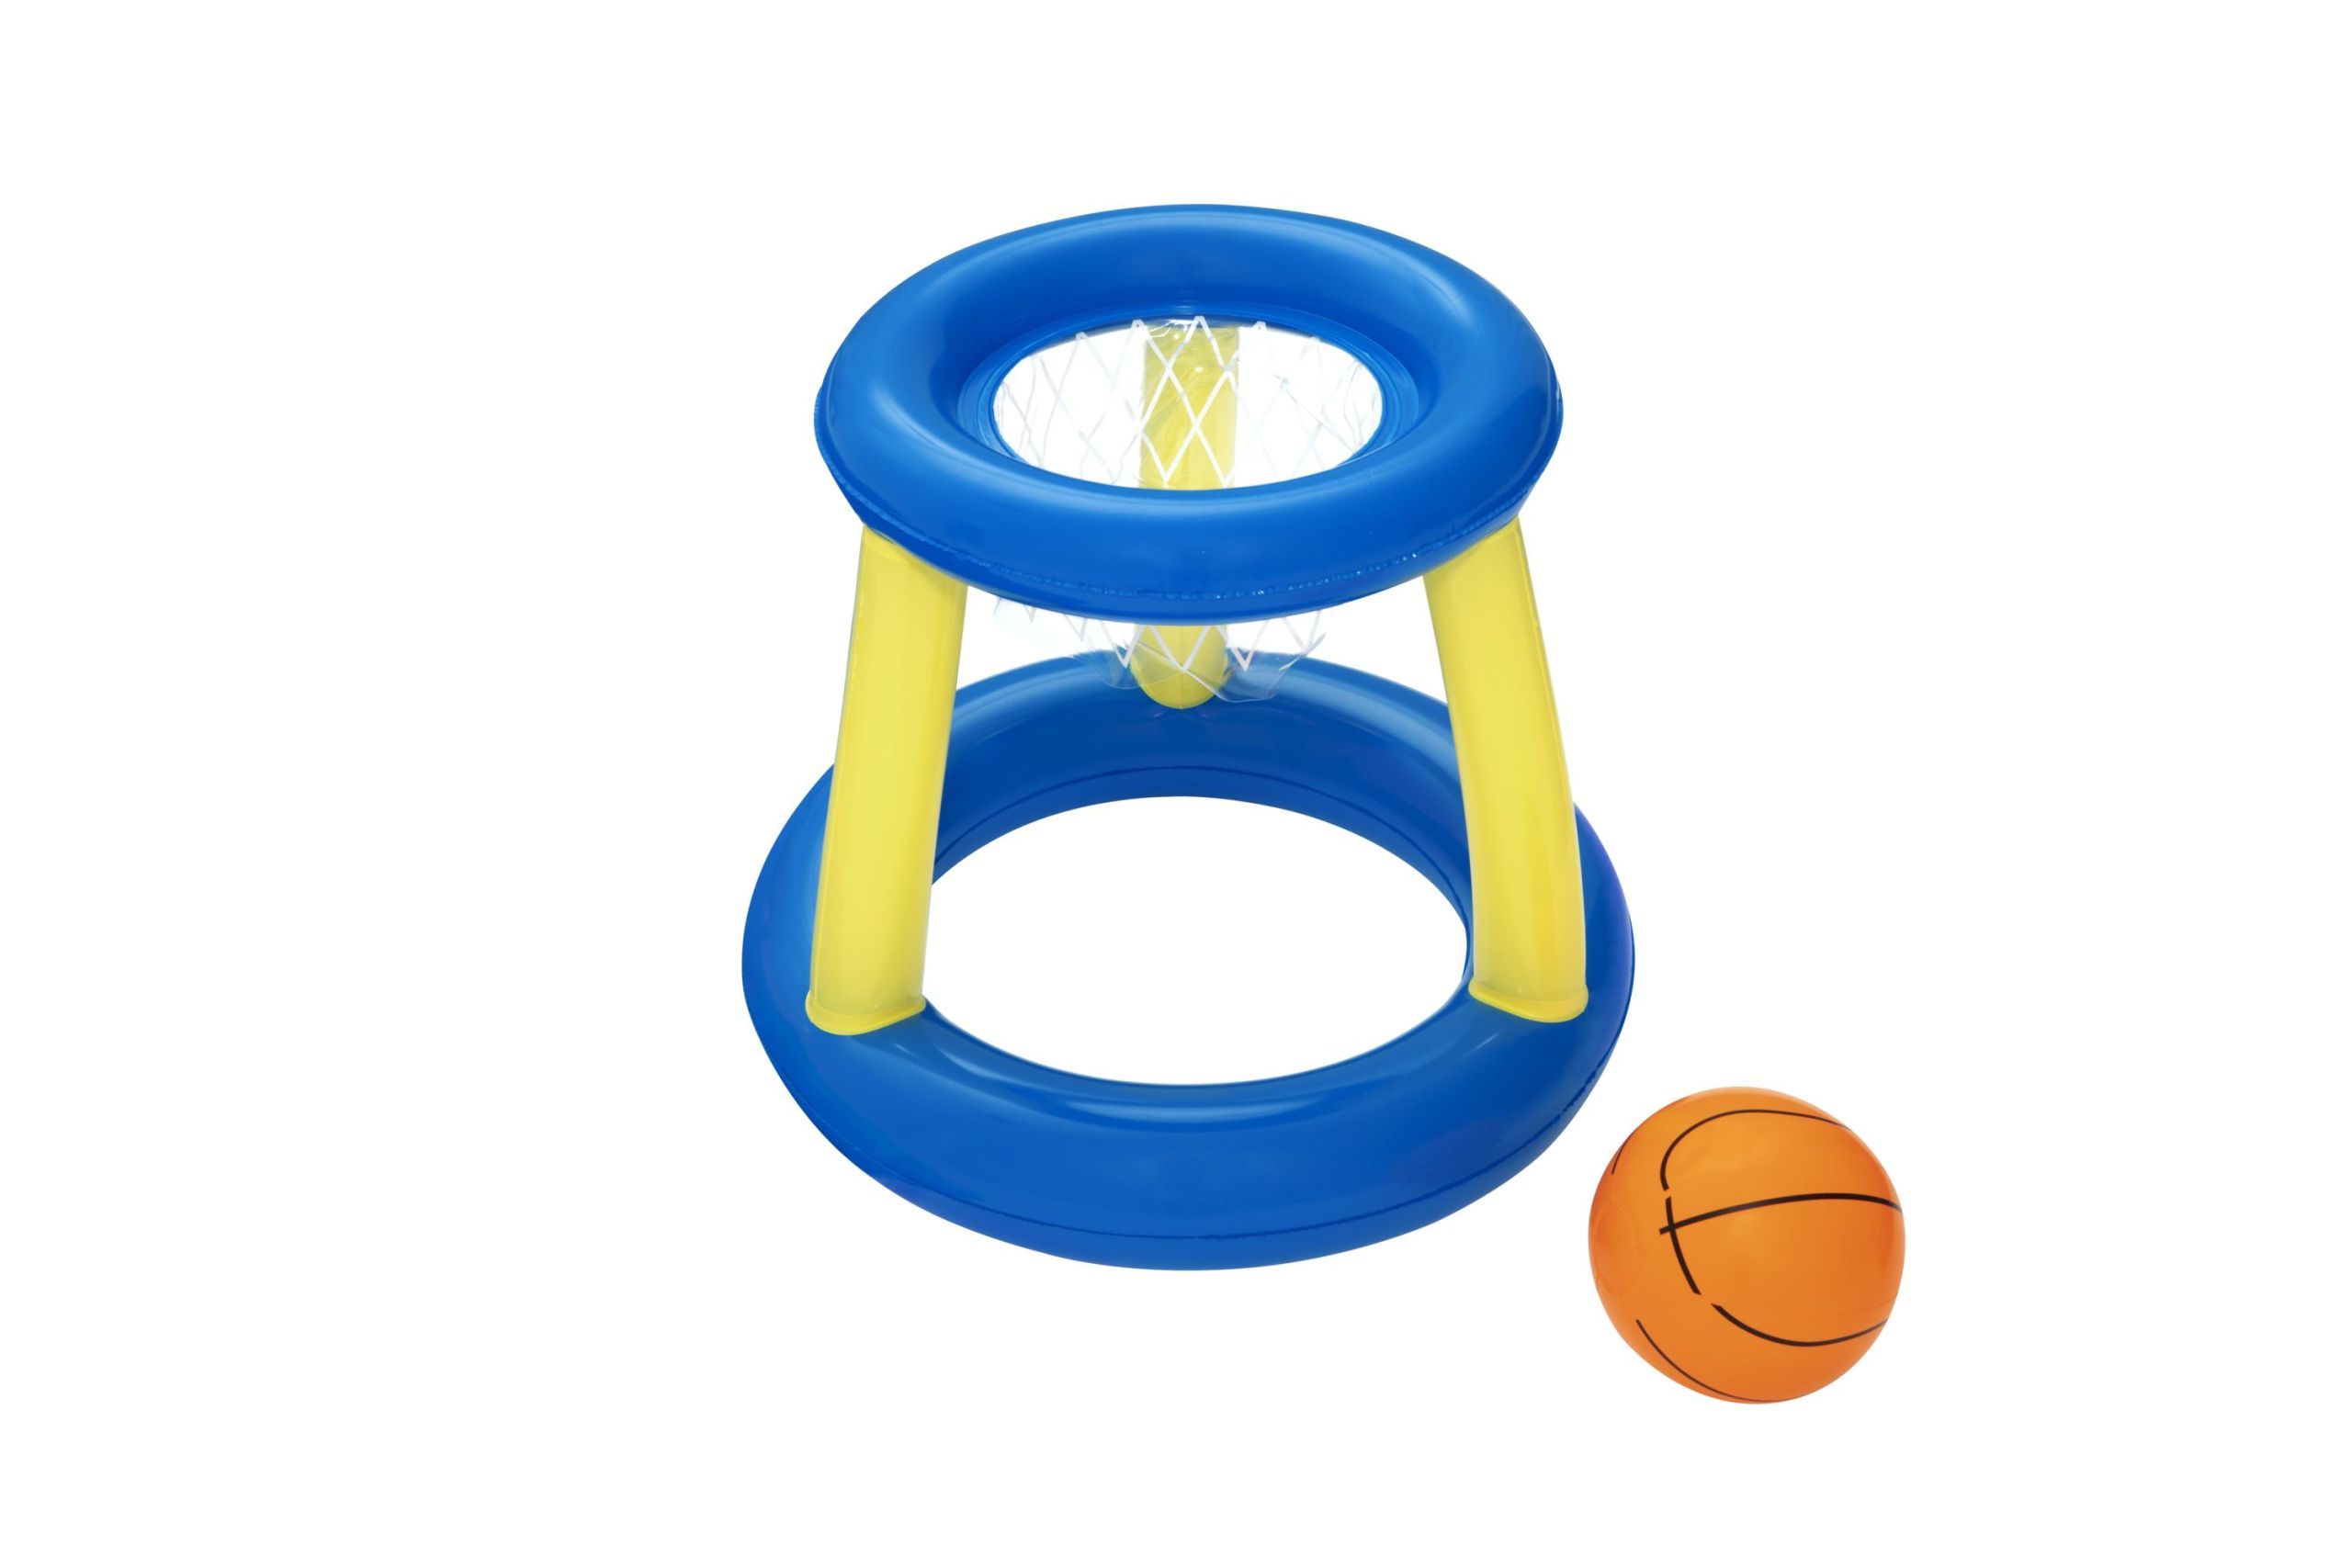 Pool Basketballkorb - schwimmendes Wurfspiel